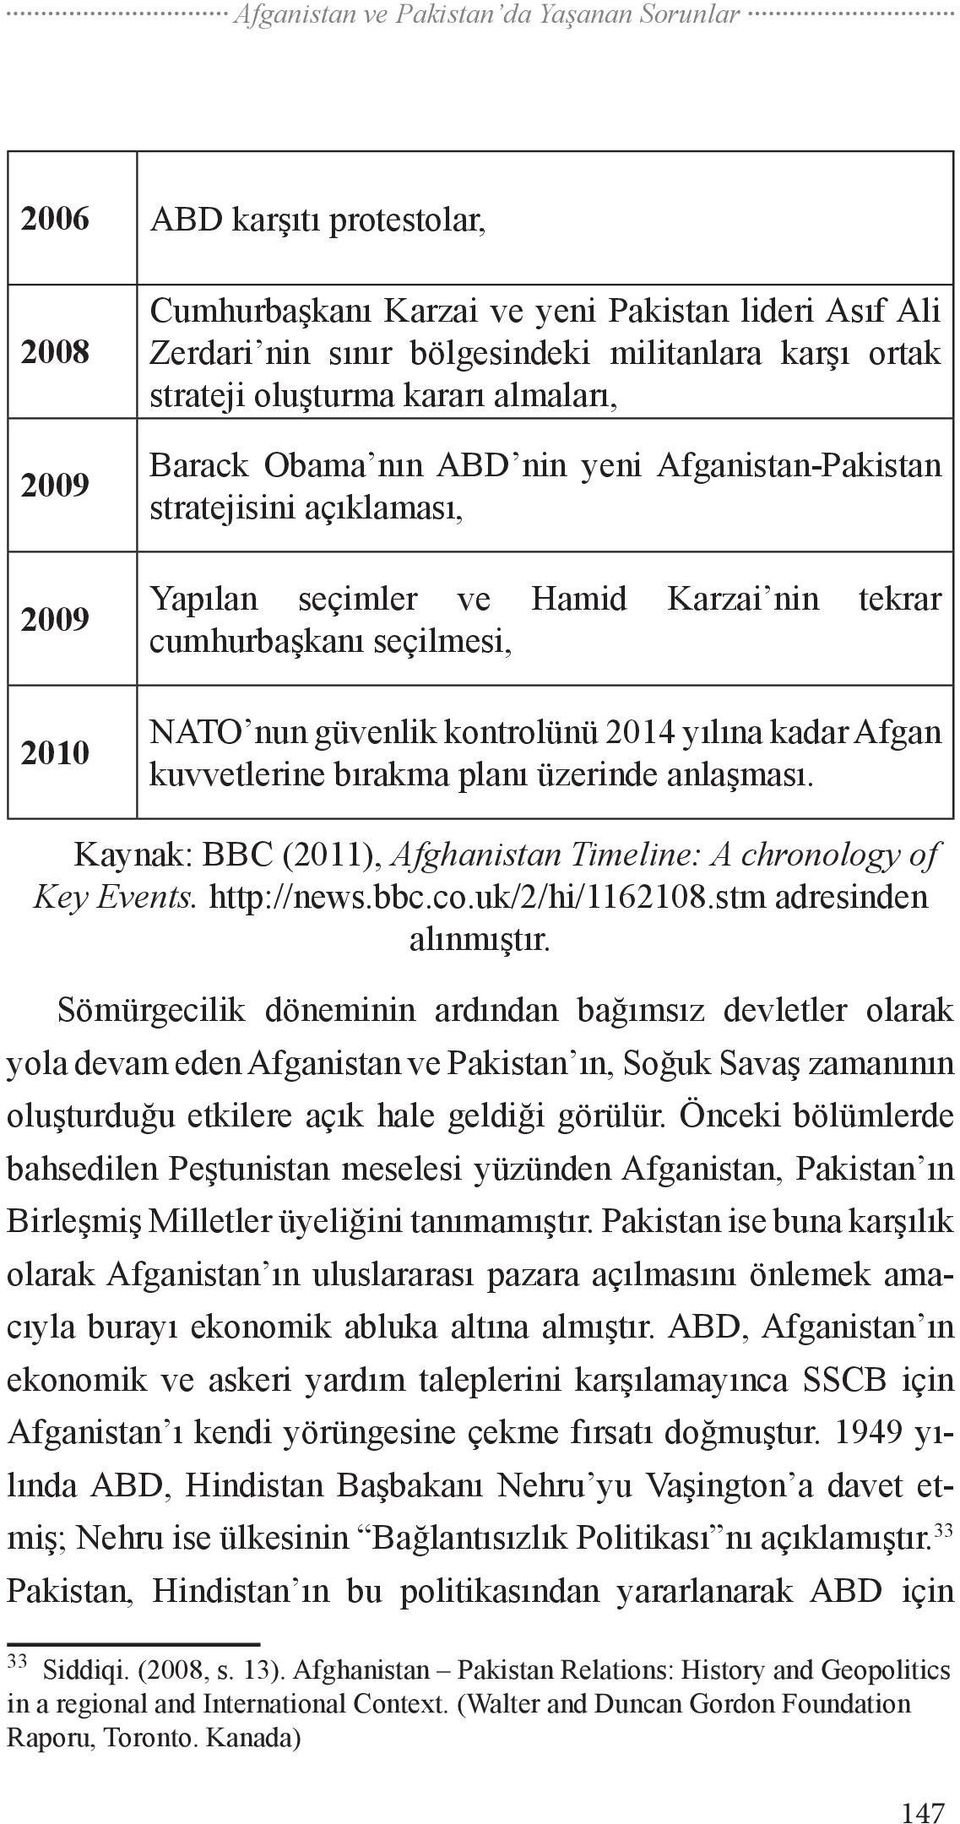 güvenlik kontrolünü 2014 yılına kadar Afgan kuvvetlerine bırakma planı üzerinde anlaşması. Kaynak: BBC (2011), Afghanistan Timeline: A chronology of Key Events. http://news.bbc.co.uk/2/hi/1162108.